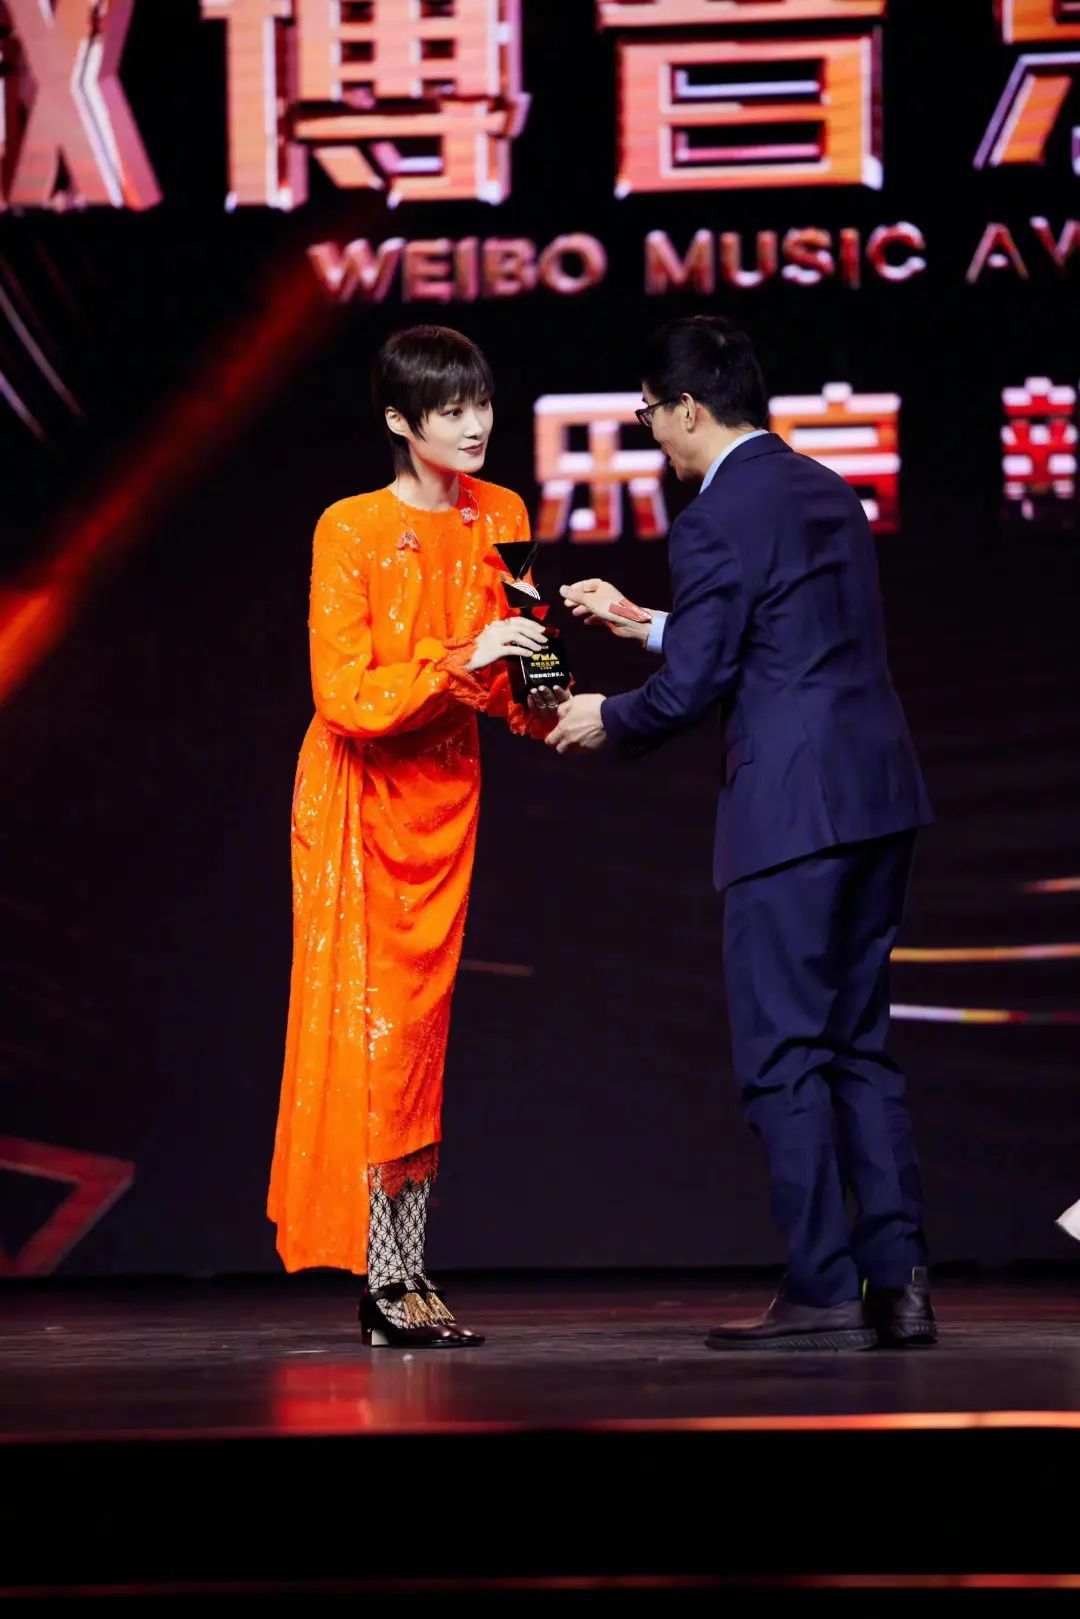 李宇春亮相微博音乐盛典,穿一身橘色亮片裙,美成了焦点!